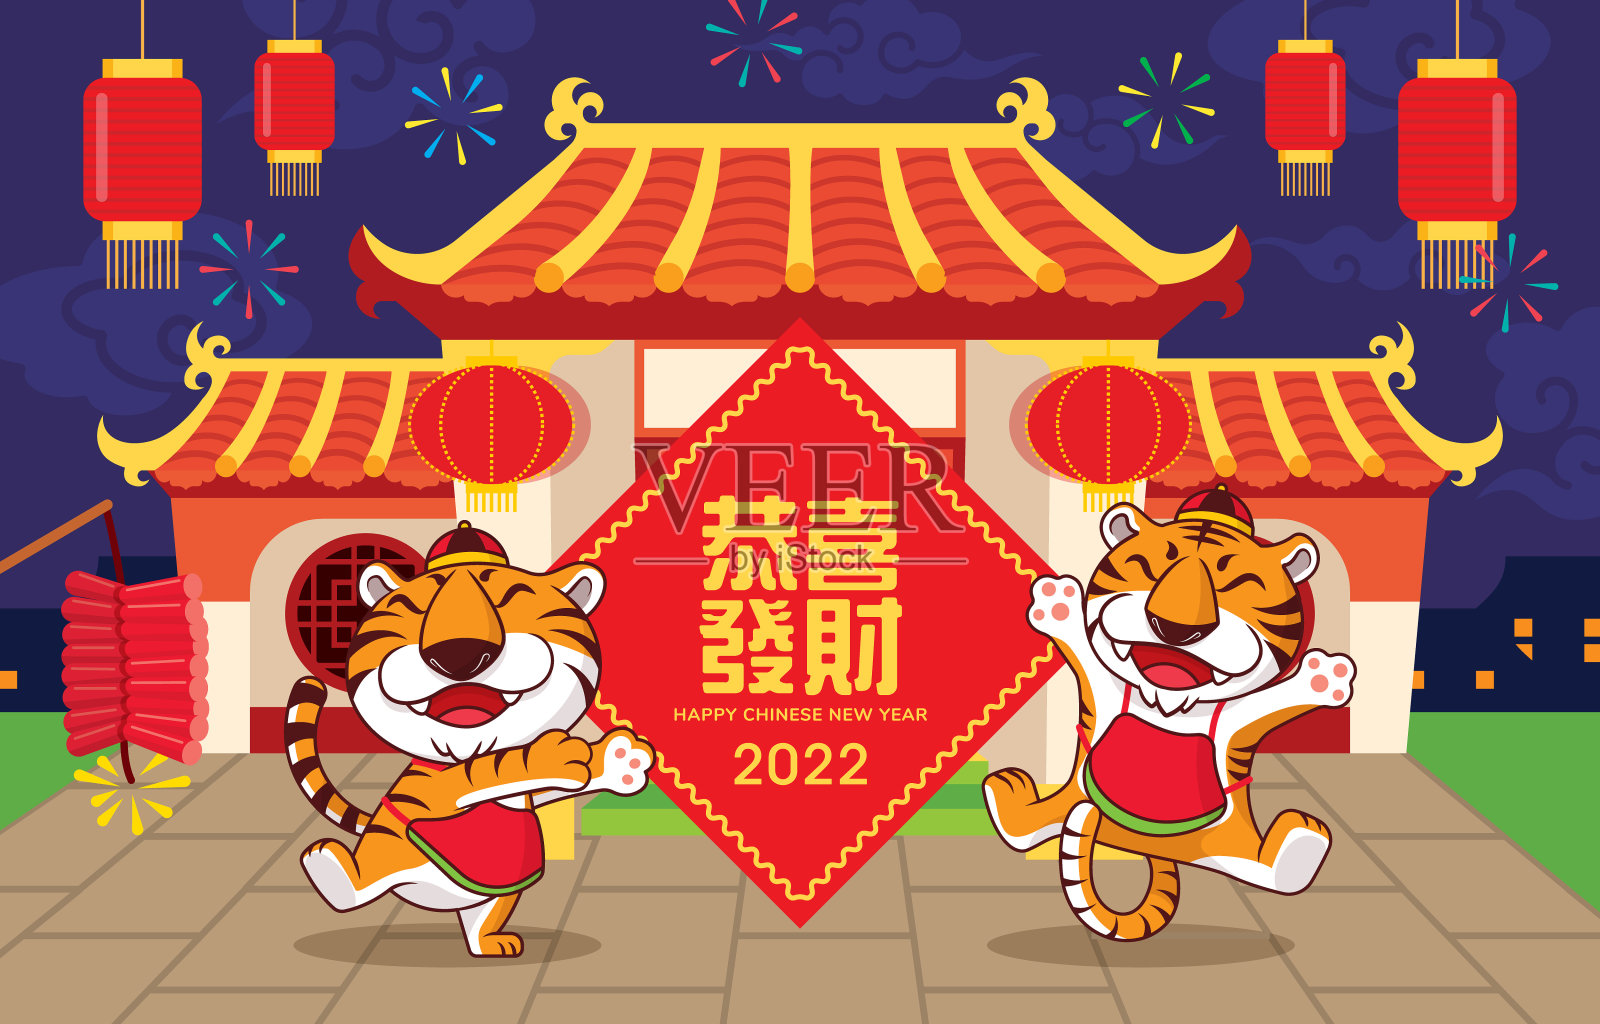 2022年春节快乐。卡通可爱的老虎与中国标志对联和东方老房子与灯笼和爆竹背景。祝你在新的一年里生意兴隆设计模板素材